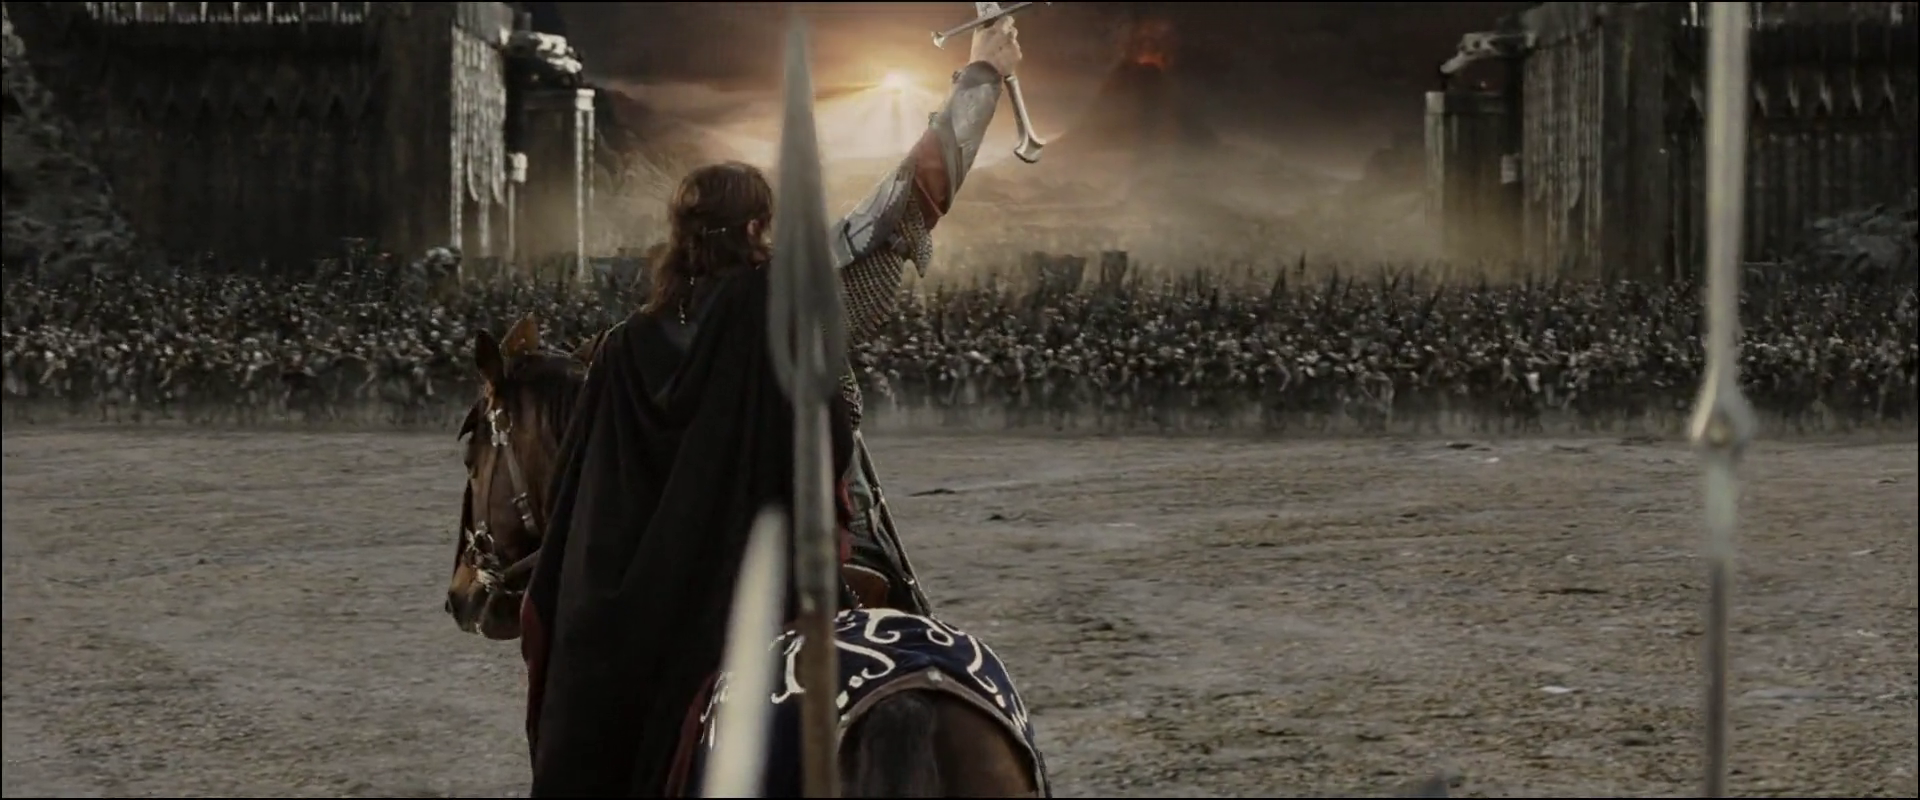 Властелин колец моменты. Арагорн Возвращение короля битва. Властелин колец Возвращение короля Арагорн. Арагорн Король Гондора.